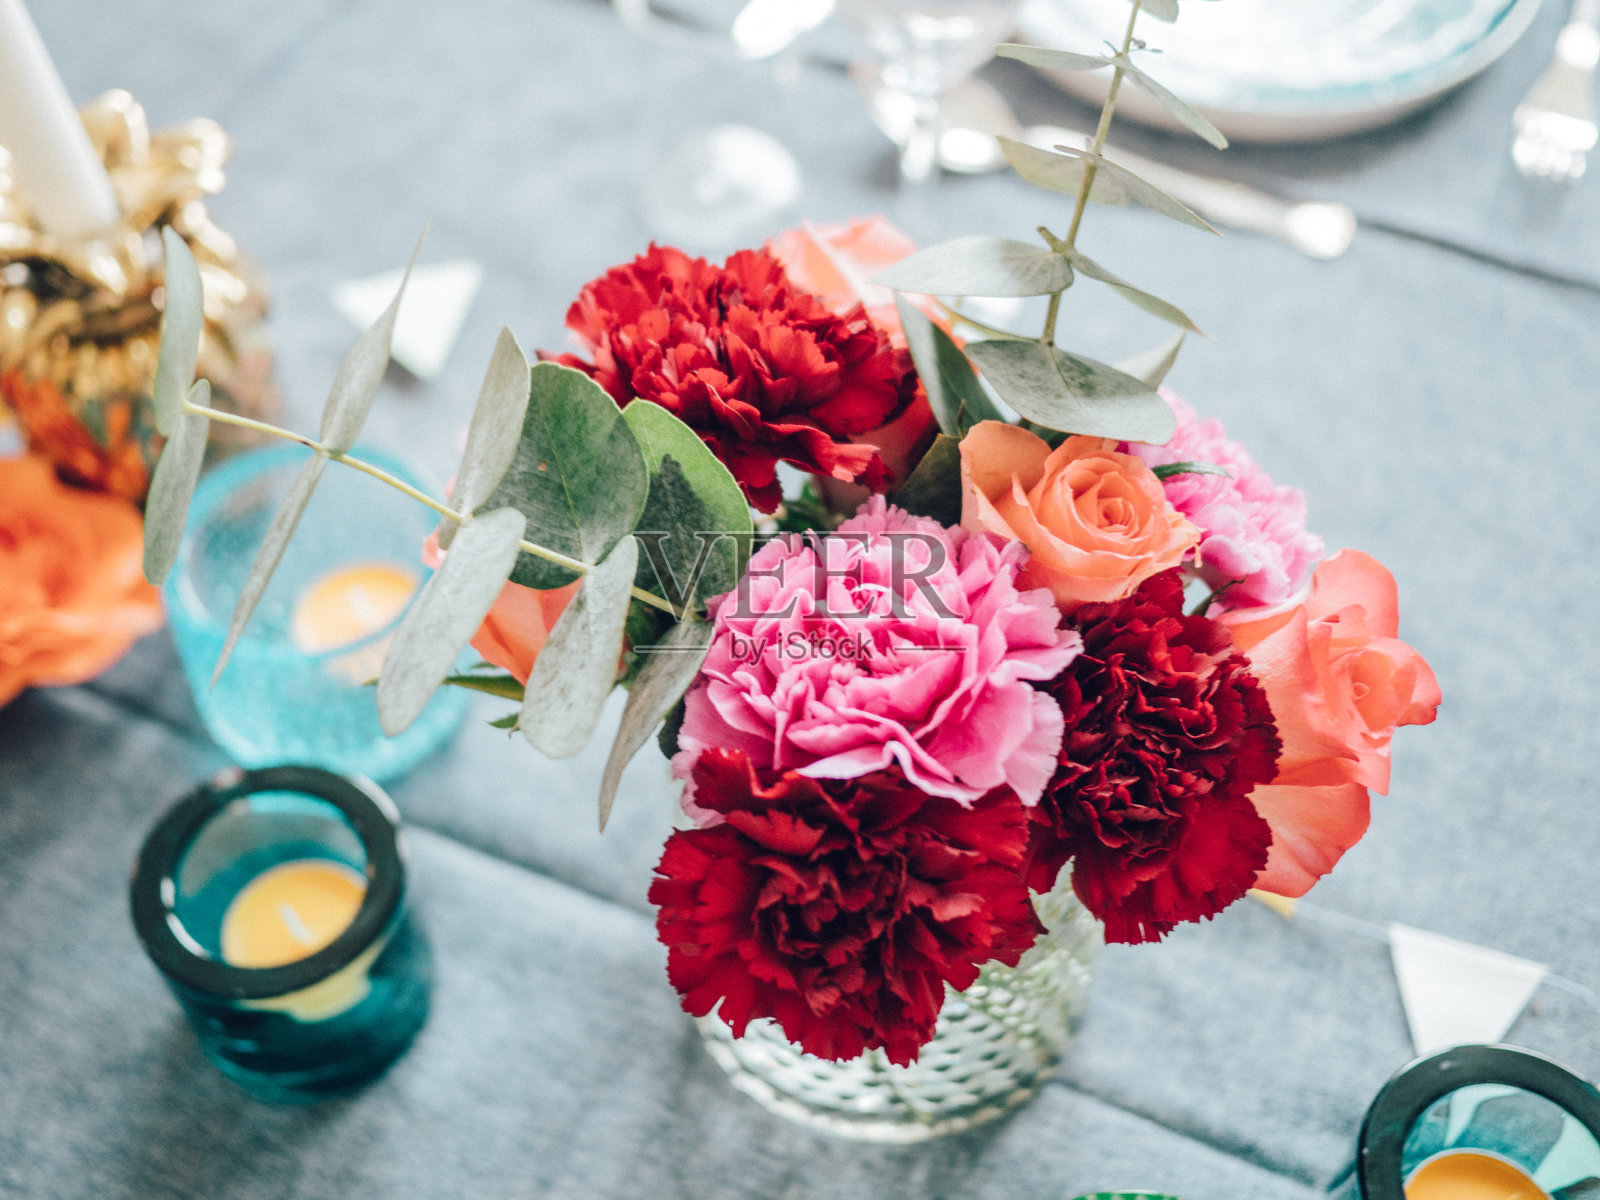 用五颜六色的花朵装饰的餐桌摆设照片摄影图片